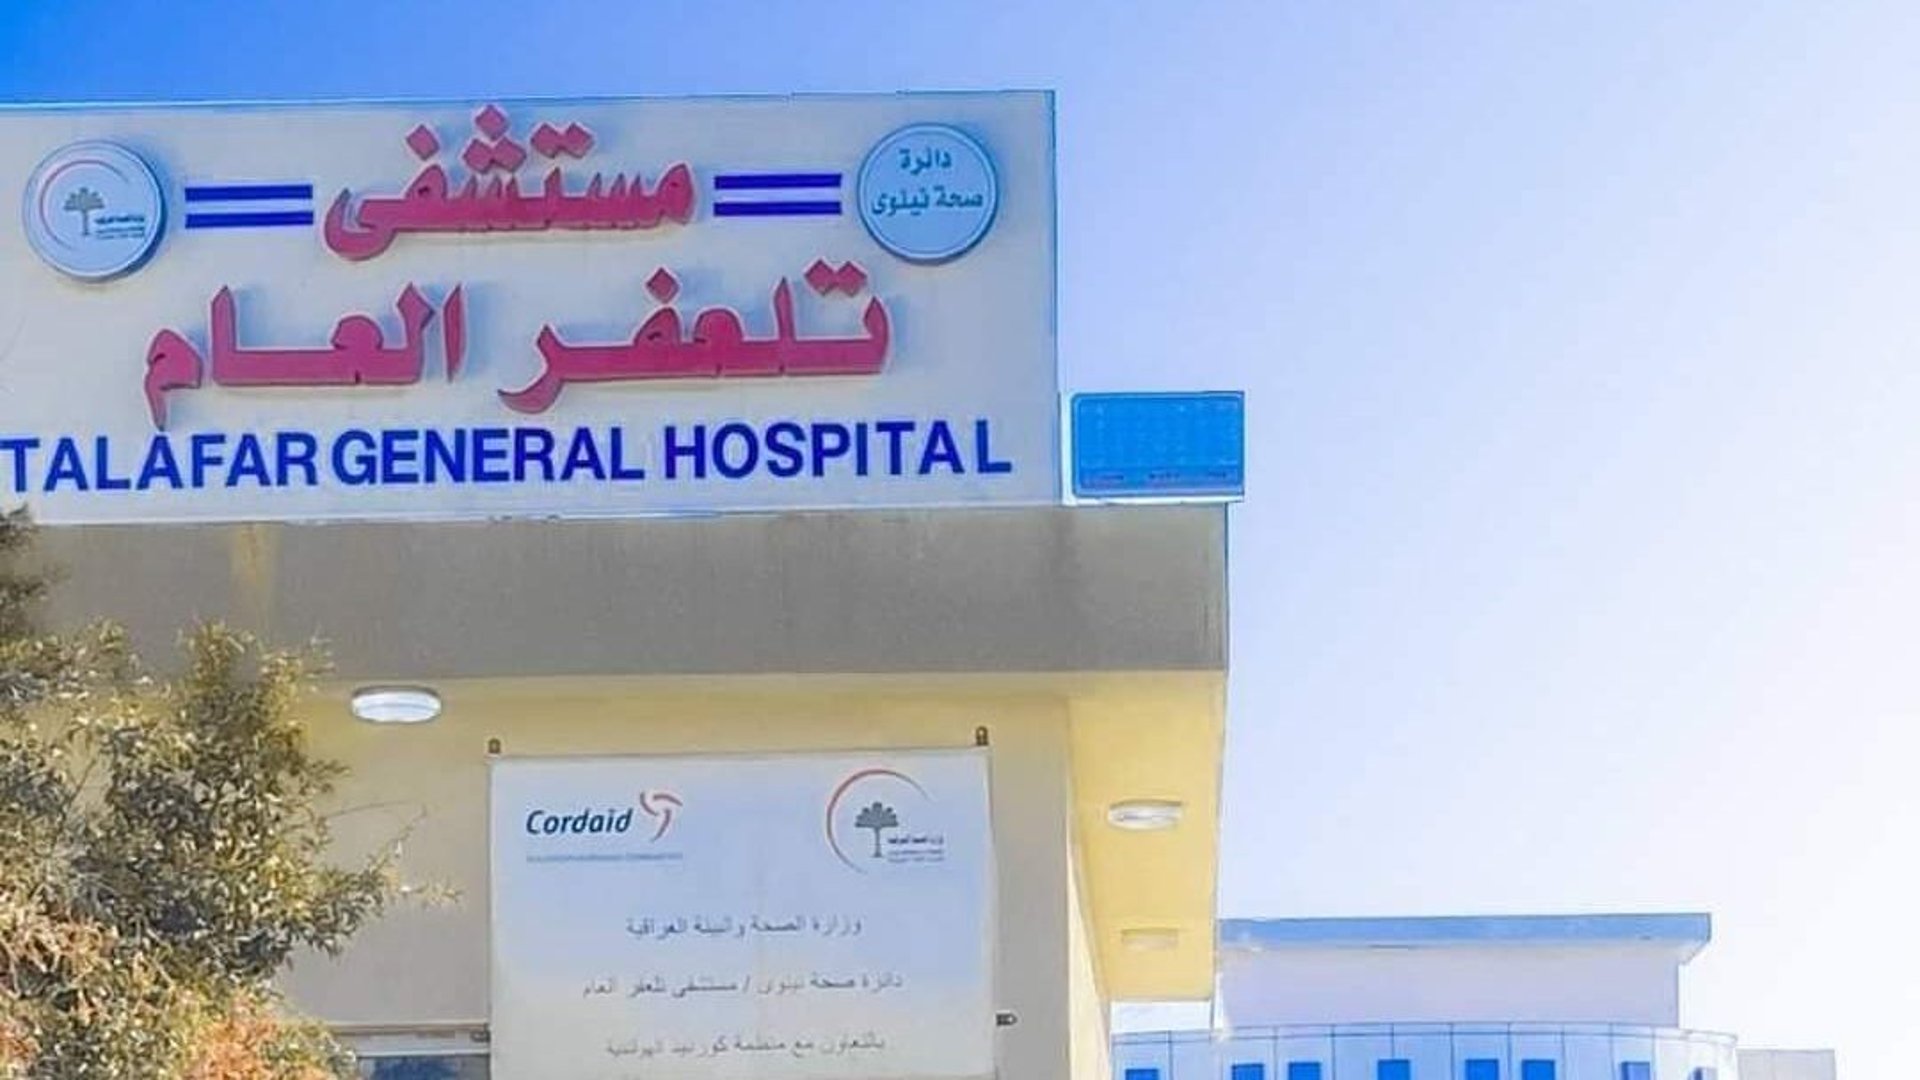 صحة نينوى تكلف مديراً جديداً لإدارة مستشفى تلعفر العام